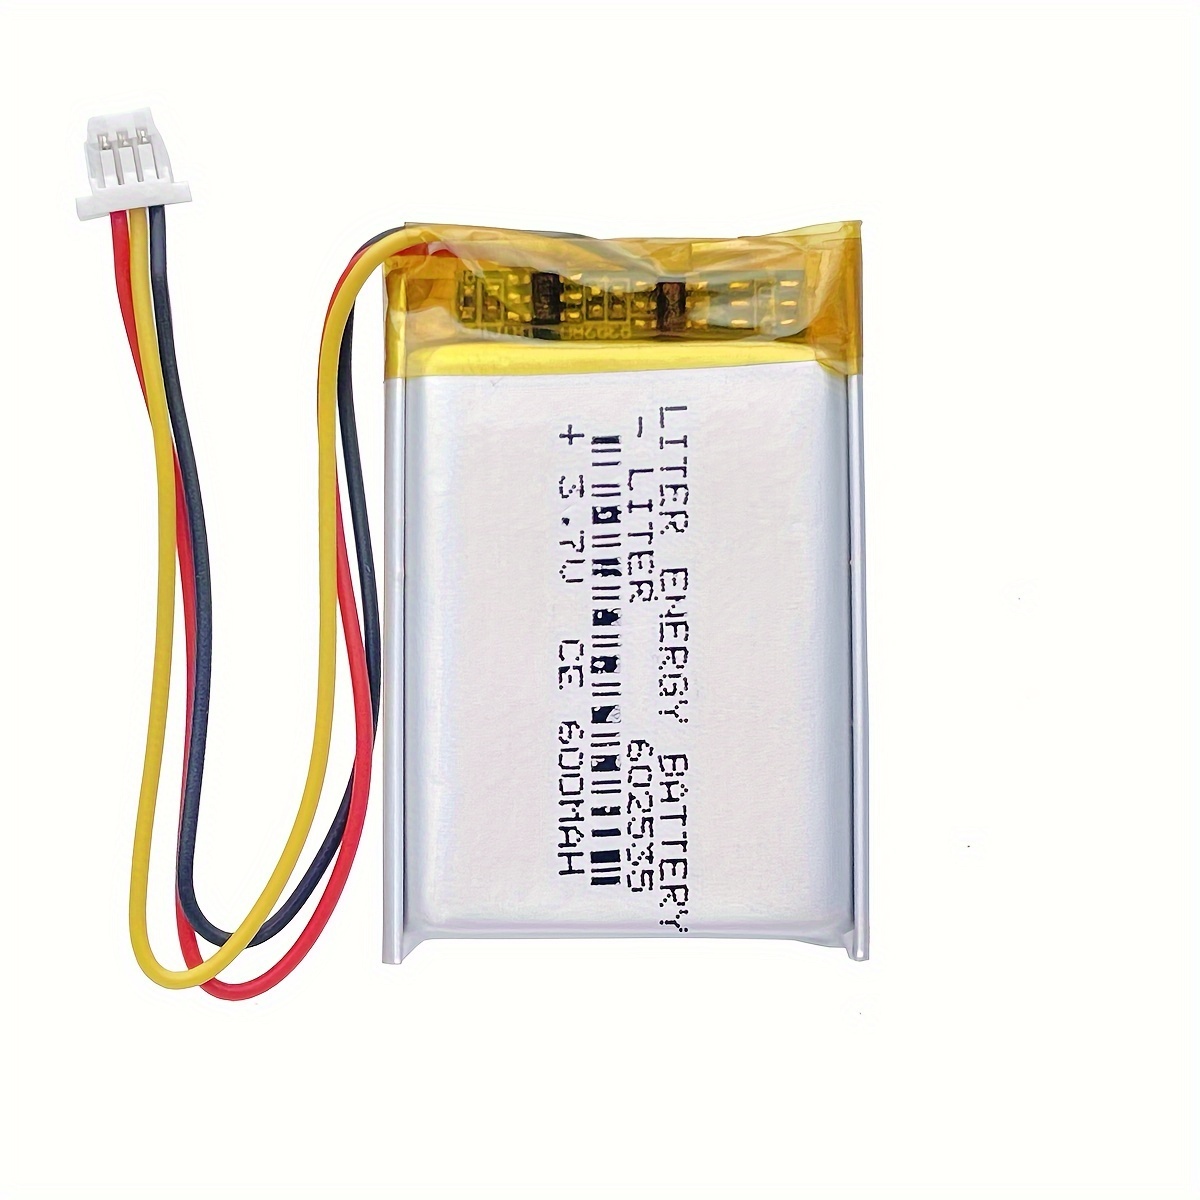 Cable de carga USB RC, cargador de batería de coche RC 7.4 V 1000 mA Lipo  Battery Cable de carga USB para auto a control remoto 1:16